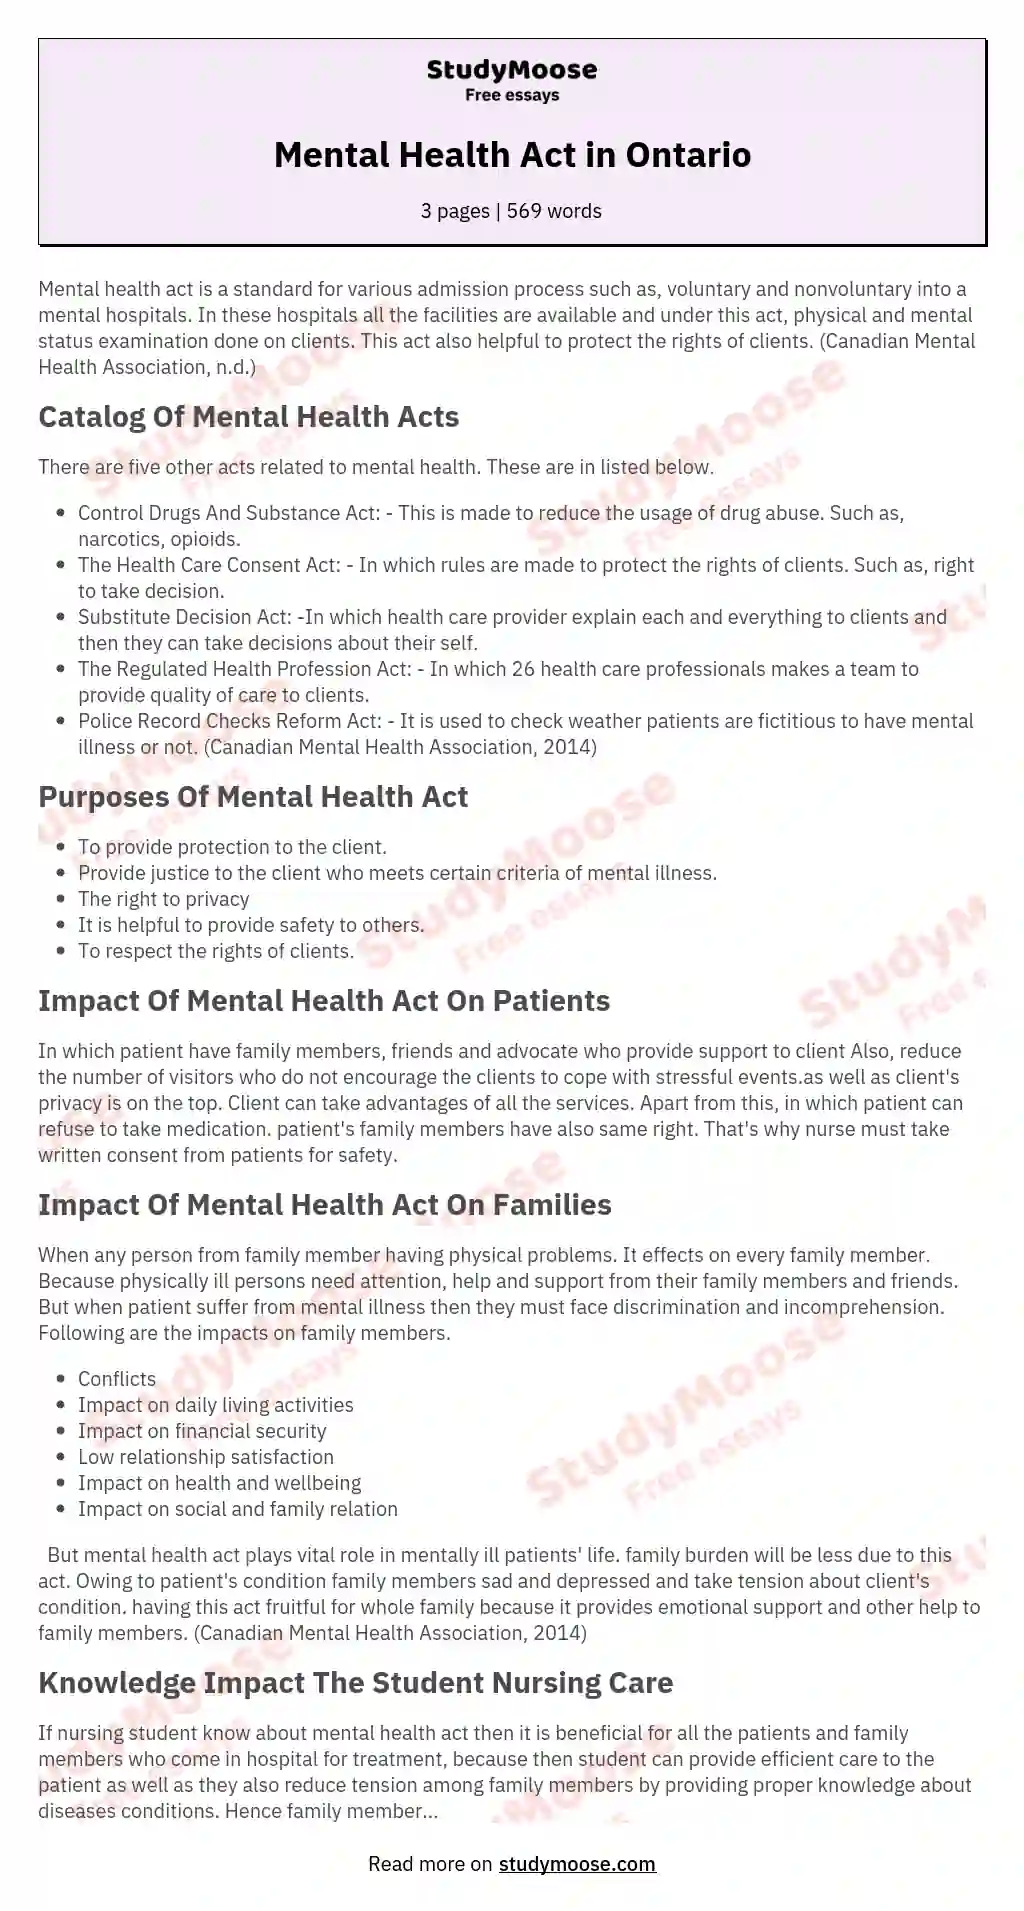 Mental Health Act in Ontario essay